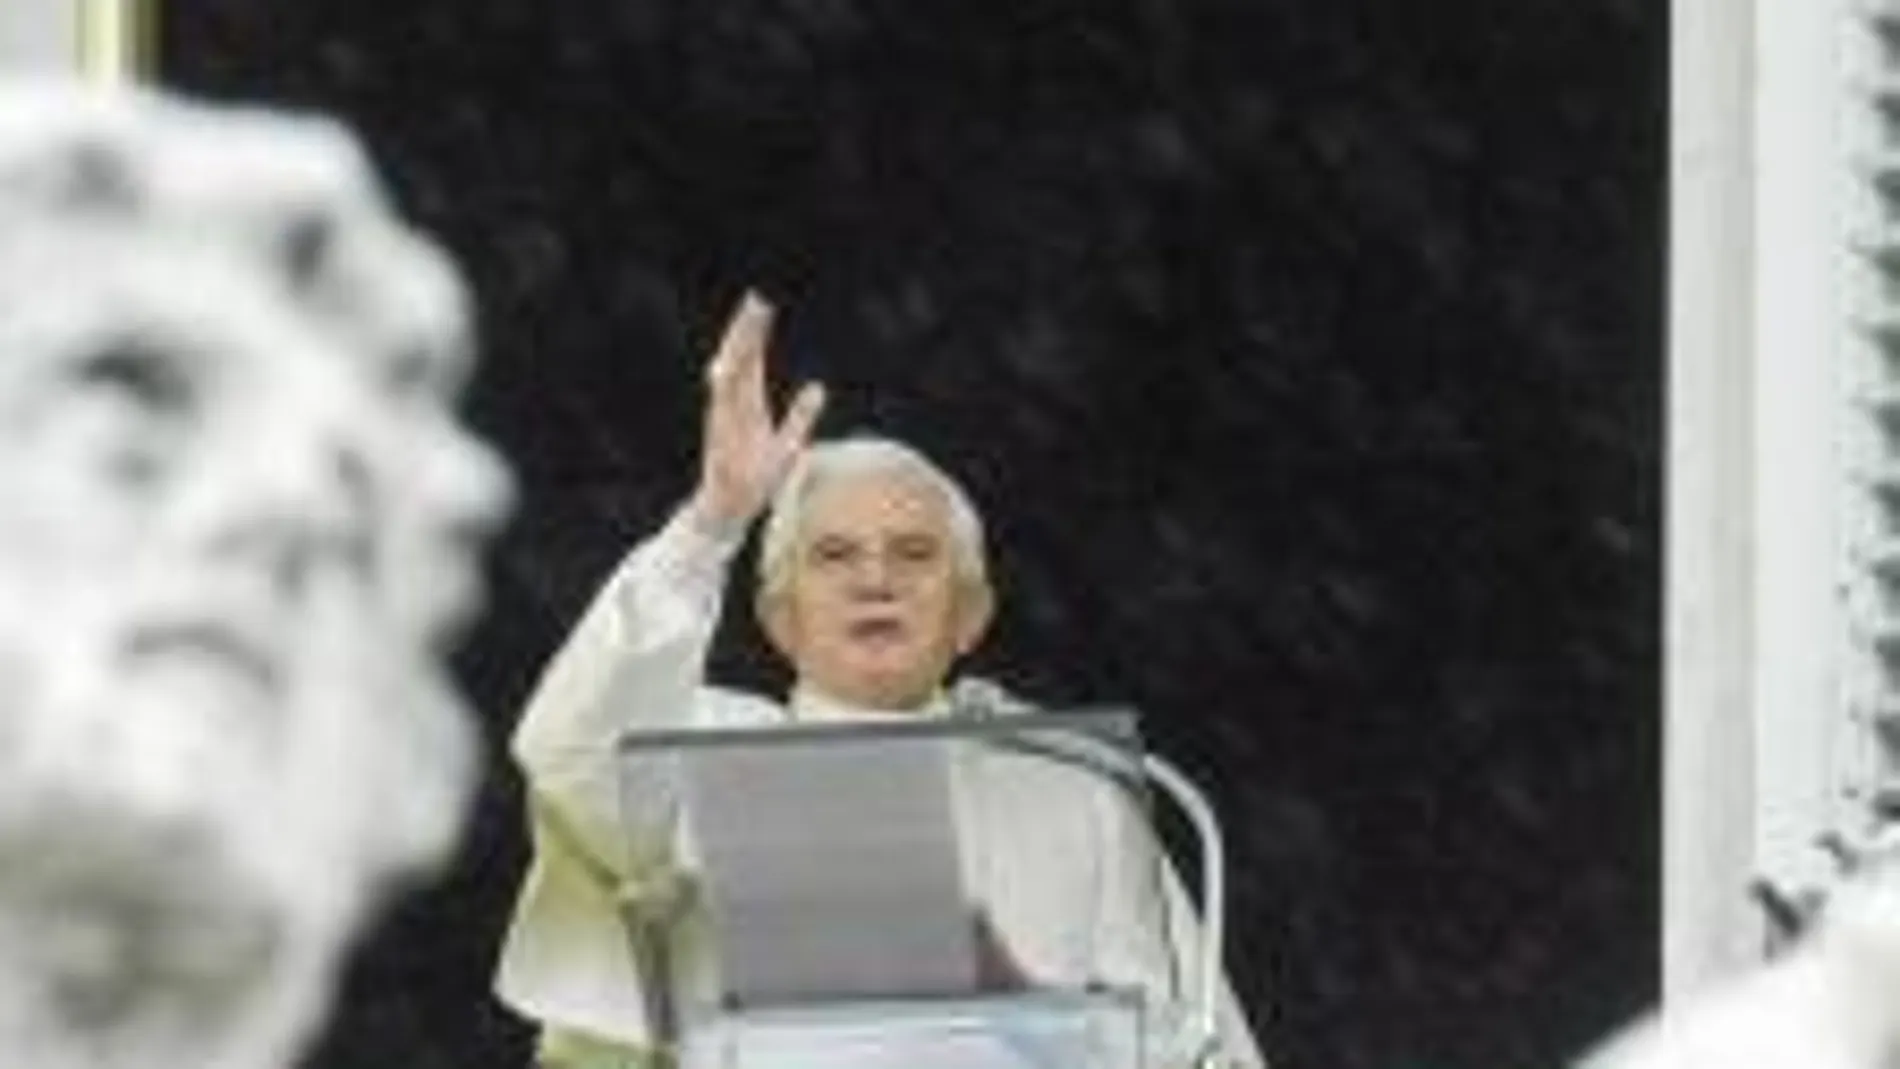 La clásica imagen de Benedicto XVI en San Pedro será sustituida en las televisiones del mundo entero por su presencia en la Sagrada Familia